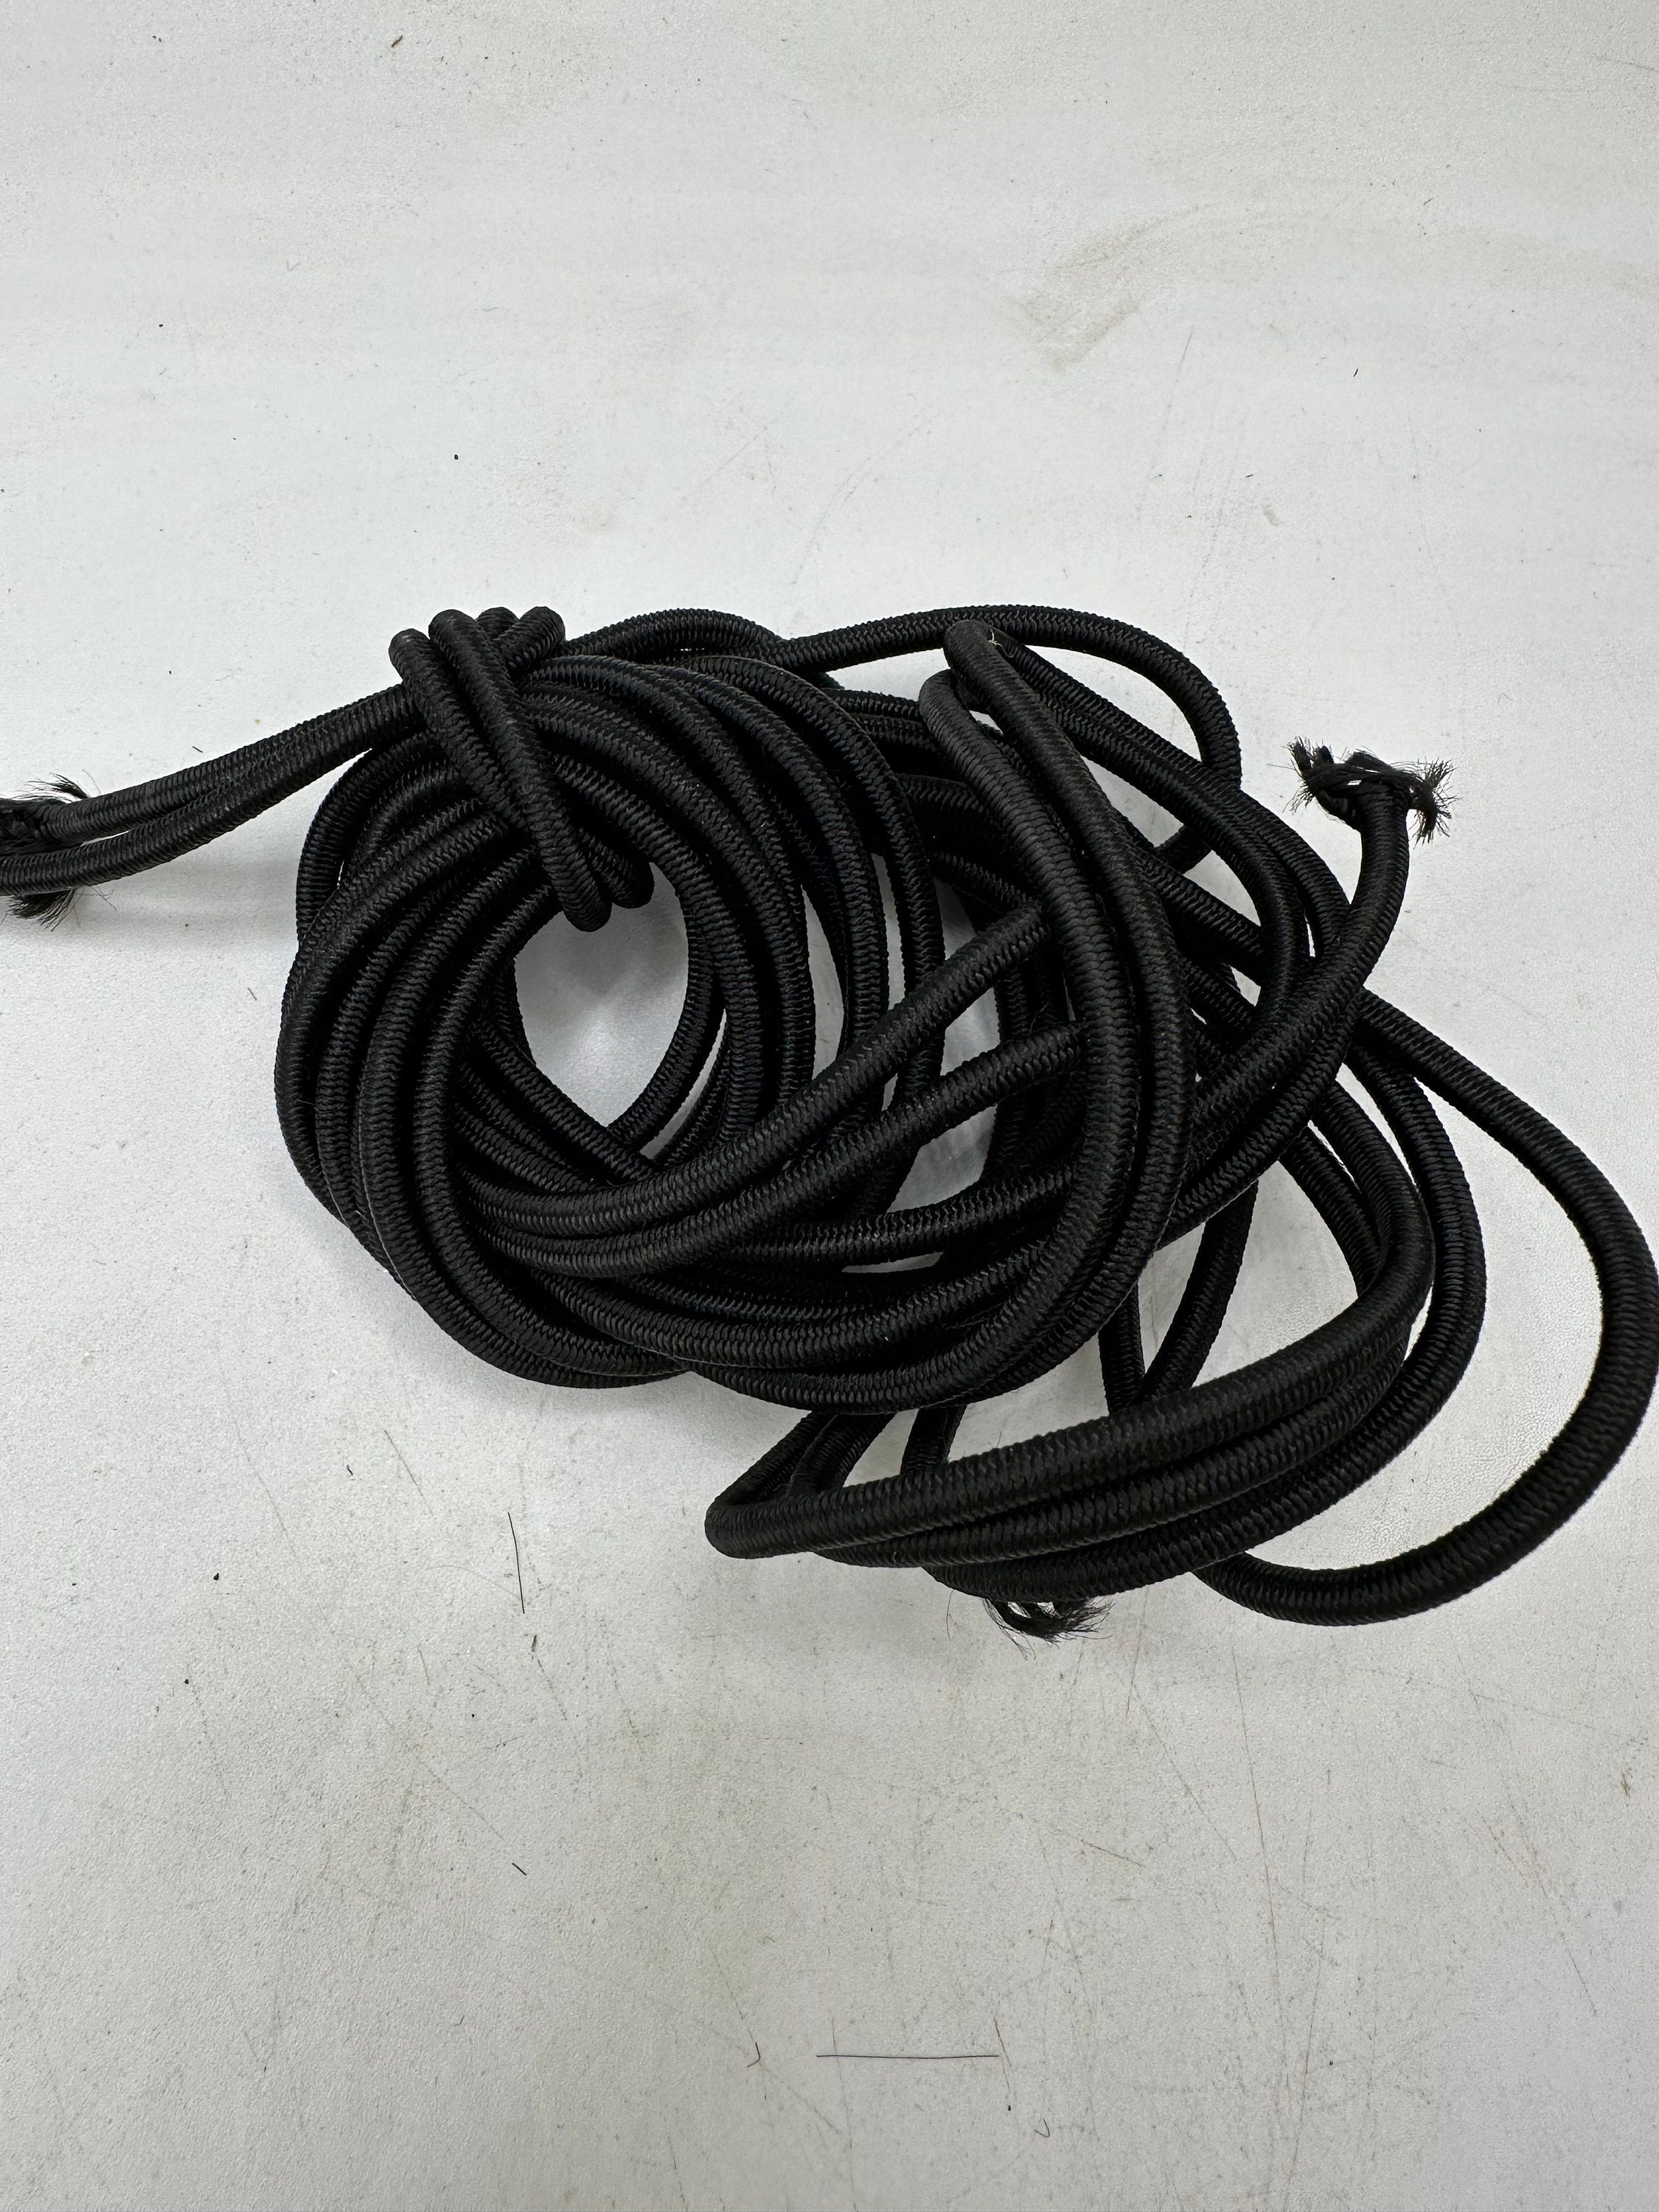 5mm x 10m BUNGEE CORD black shock chord elastic rope 10 meters long